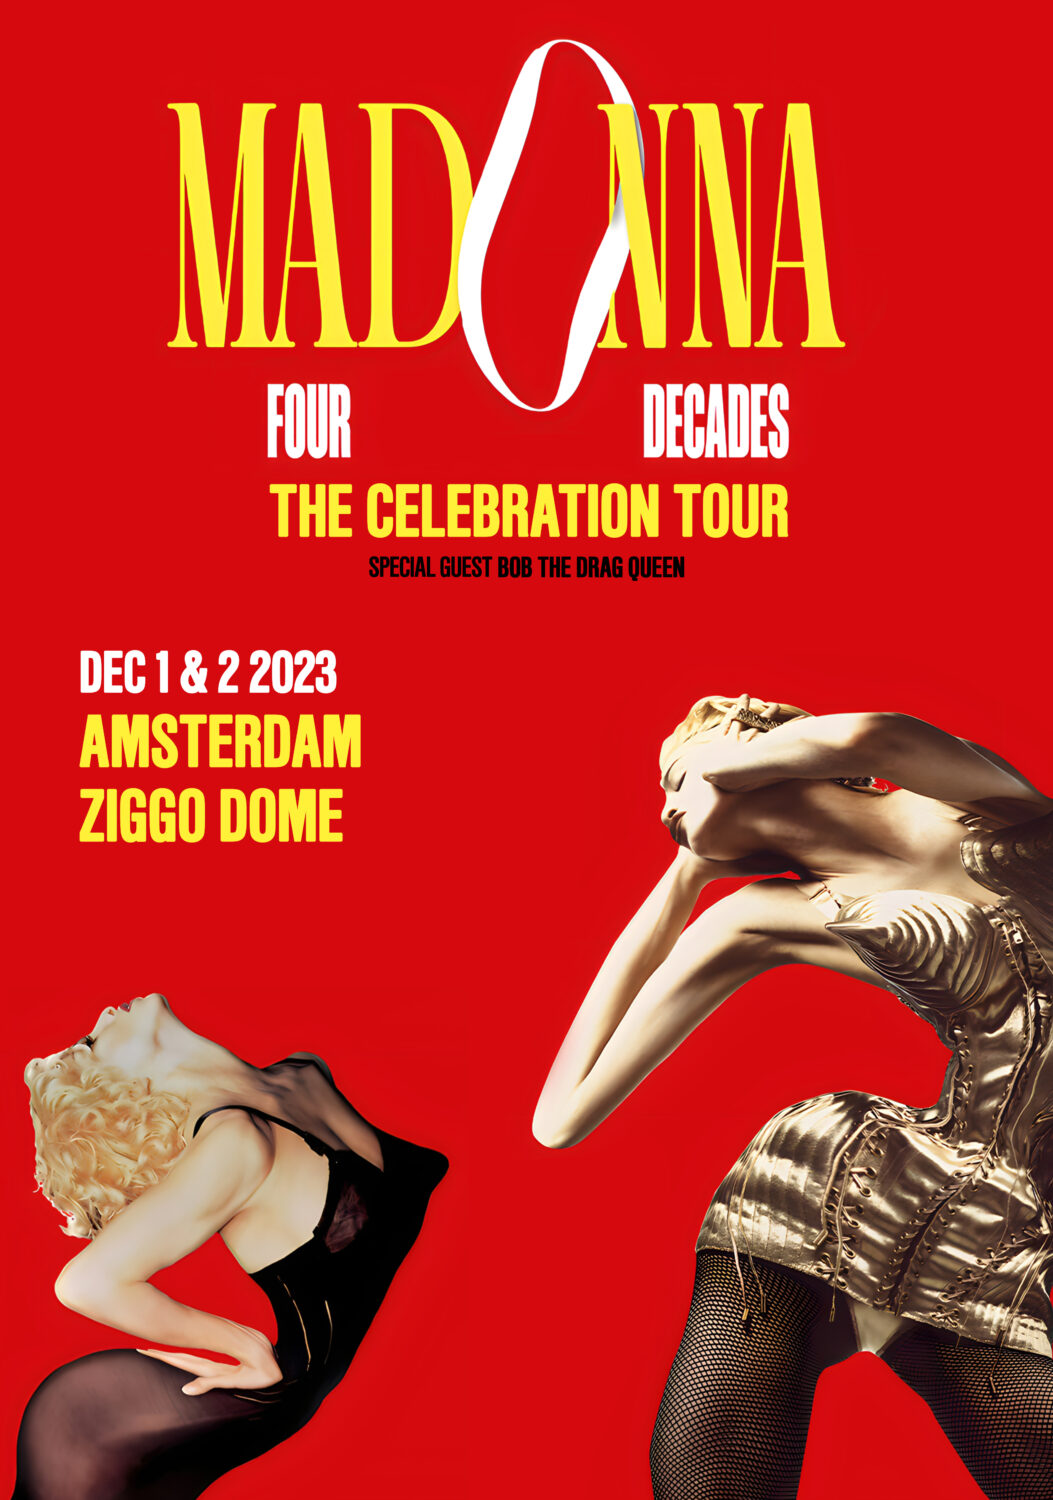 madonna european tour dates